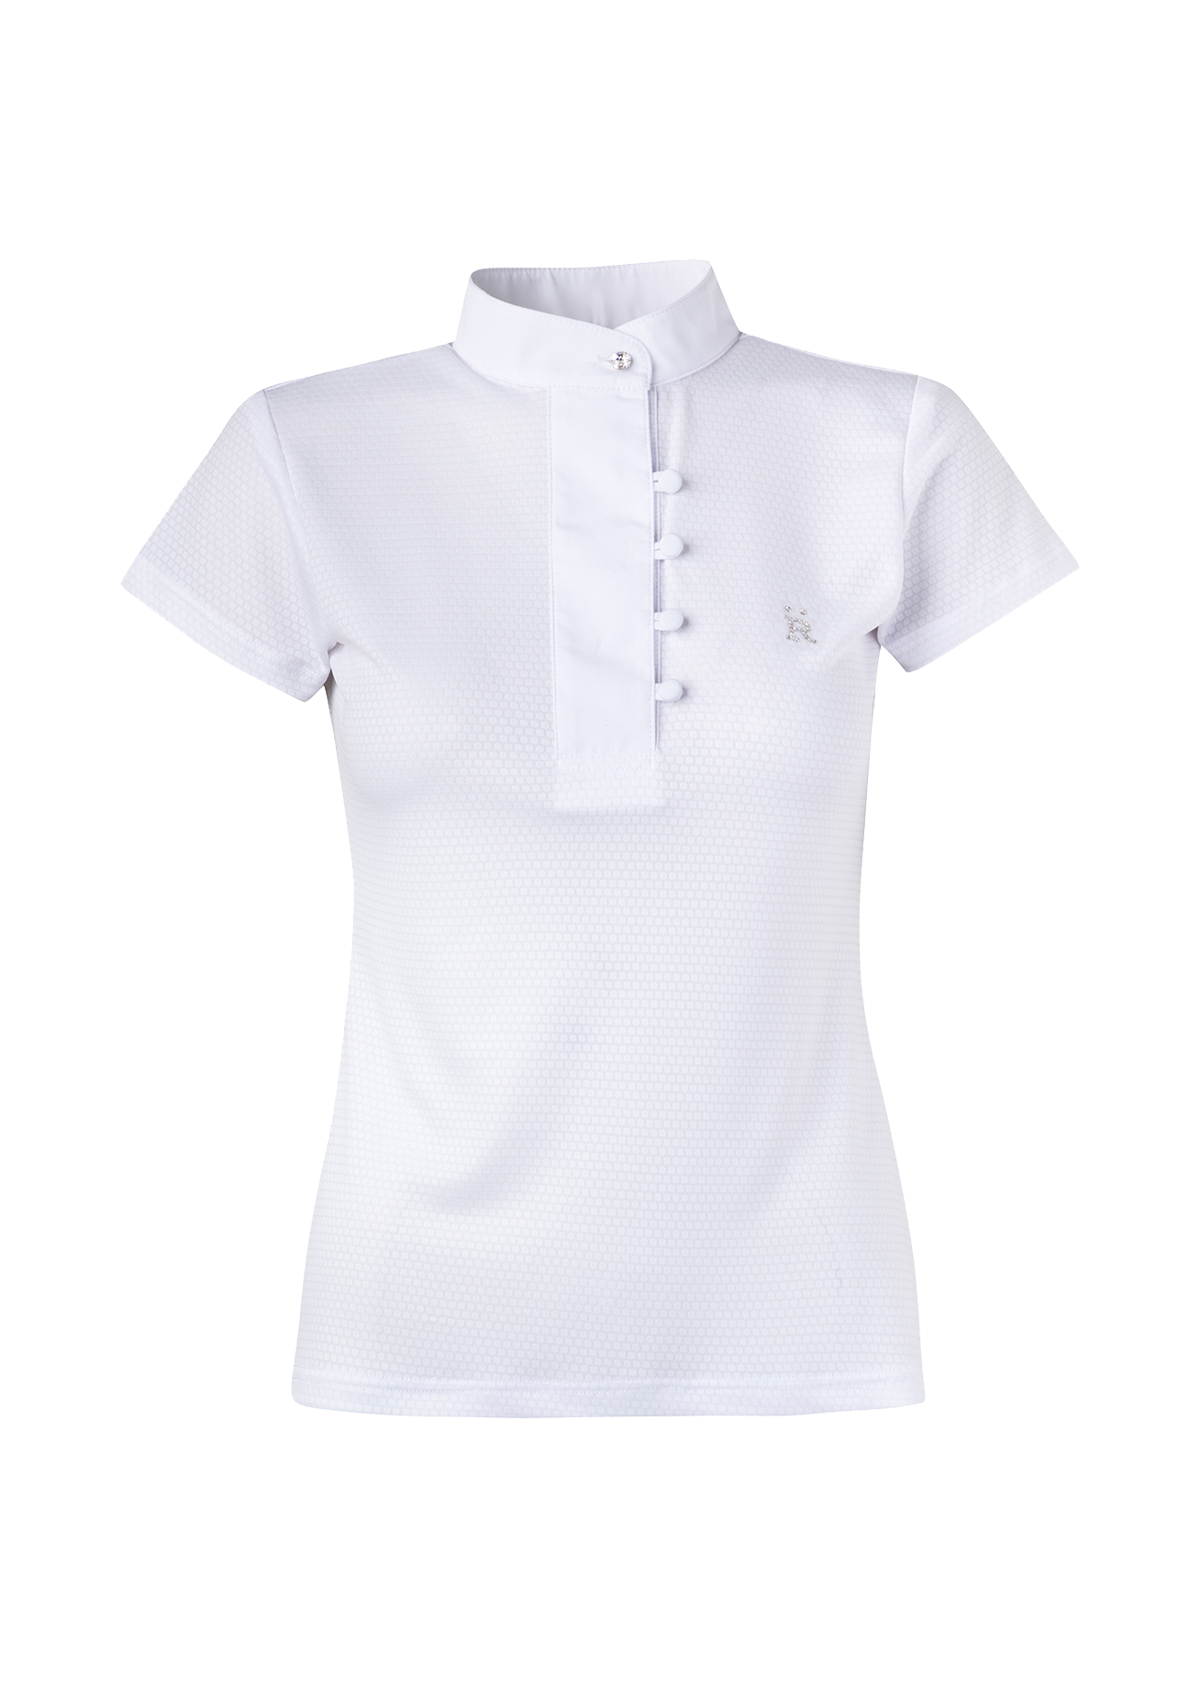 Perla Show Shirt | White - Only One Left - Rönner